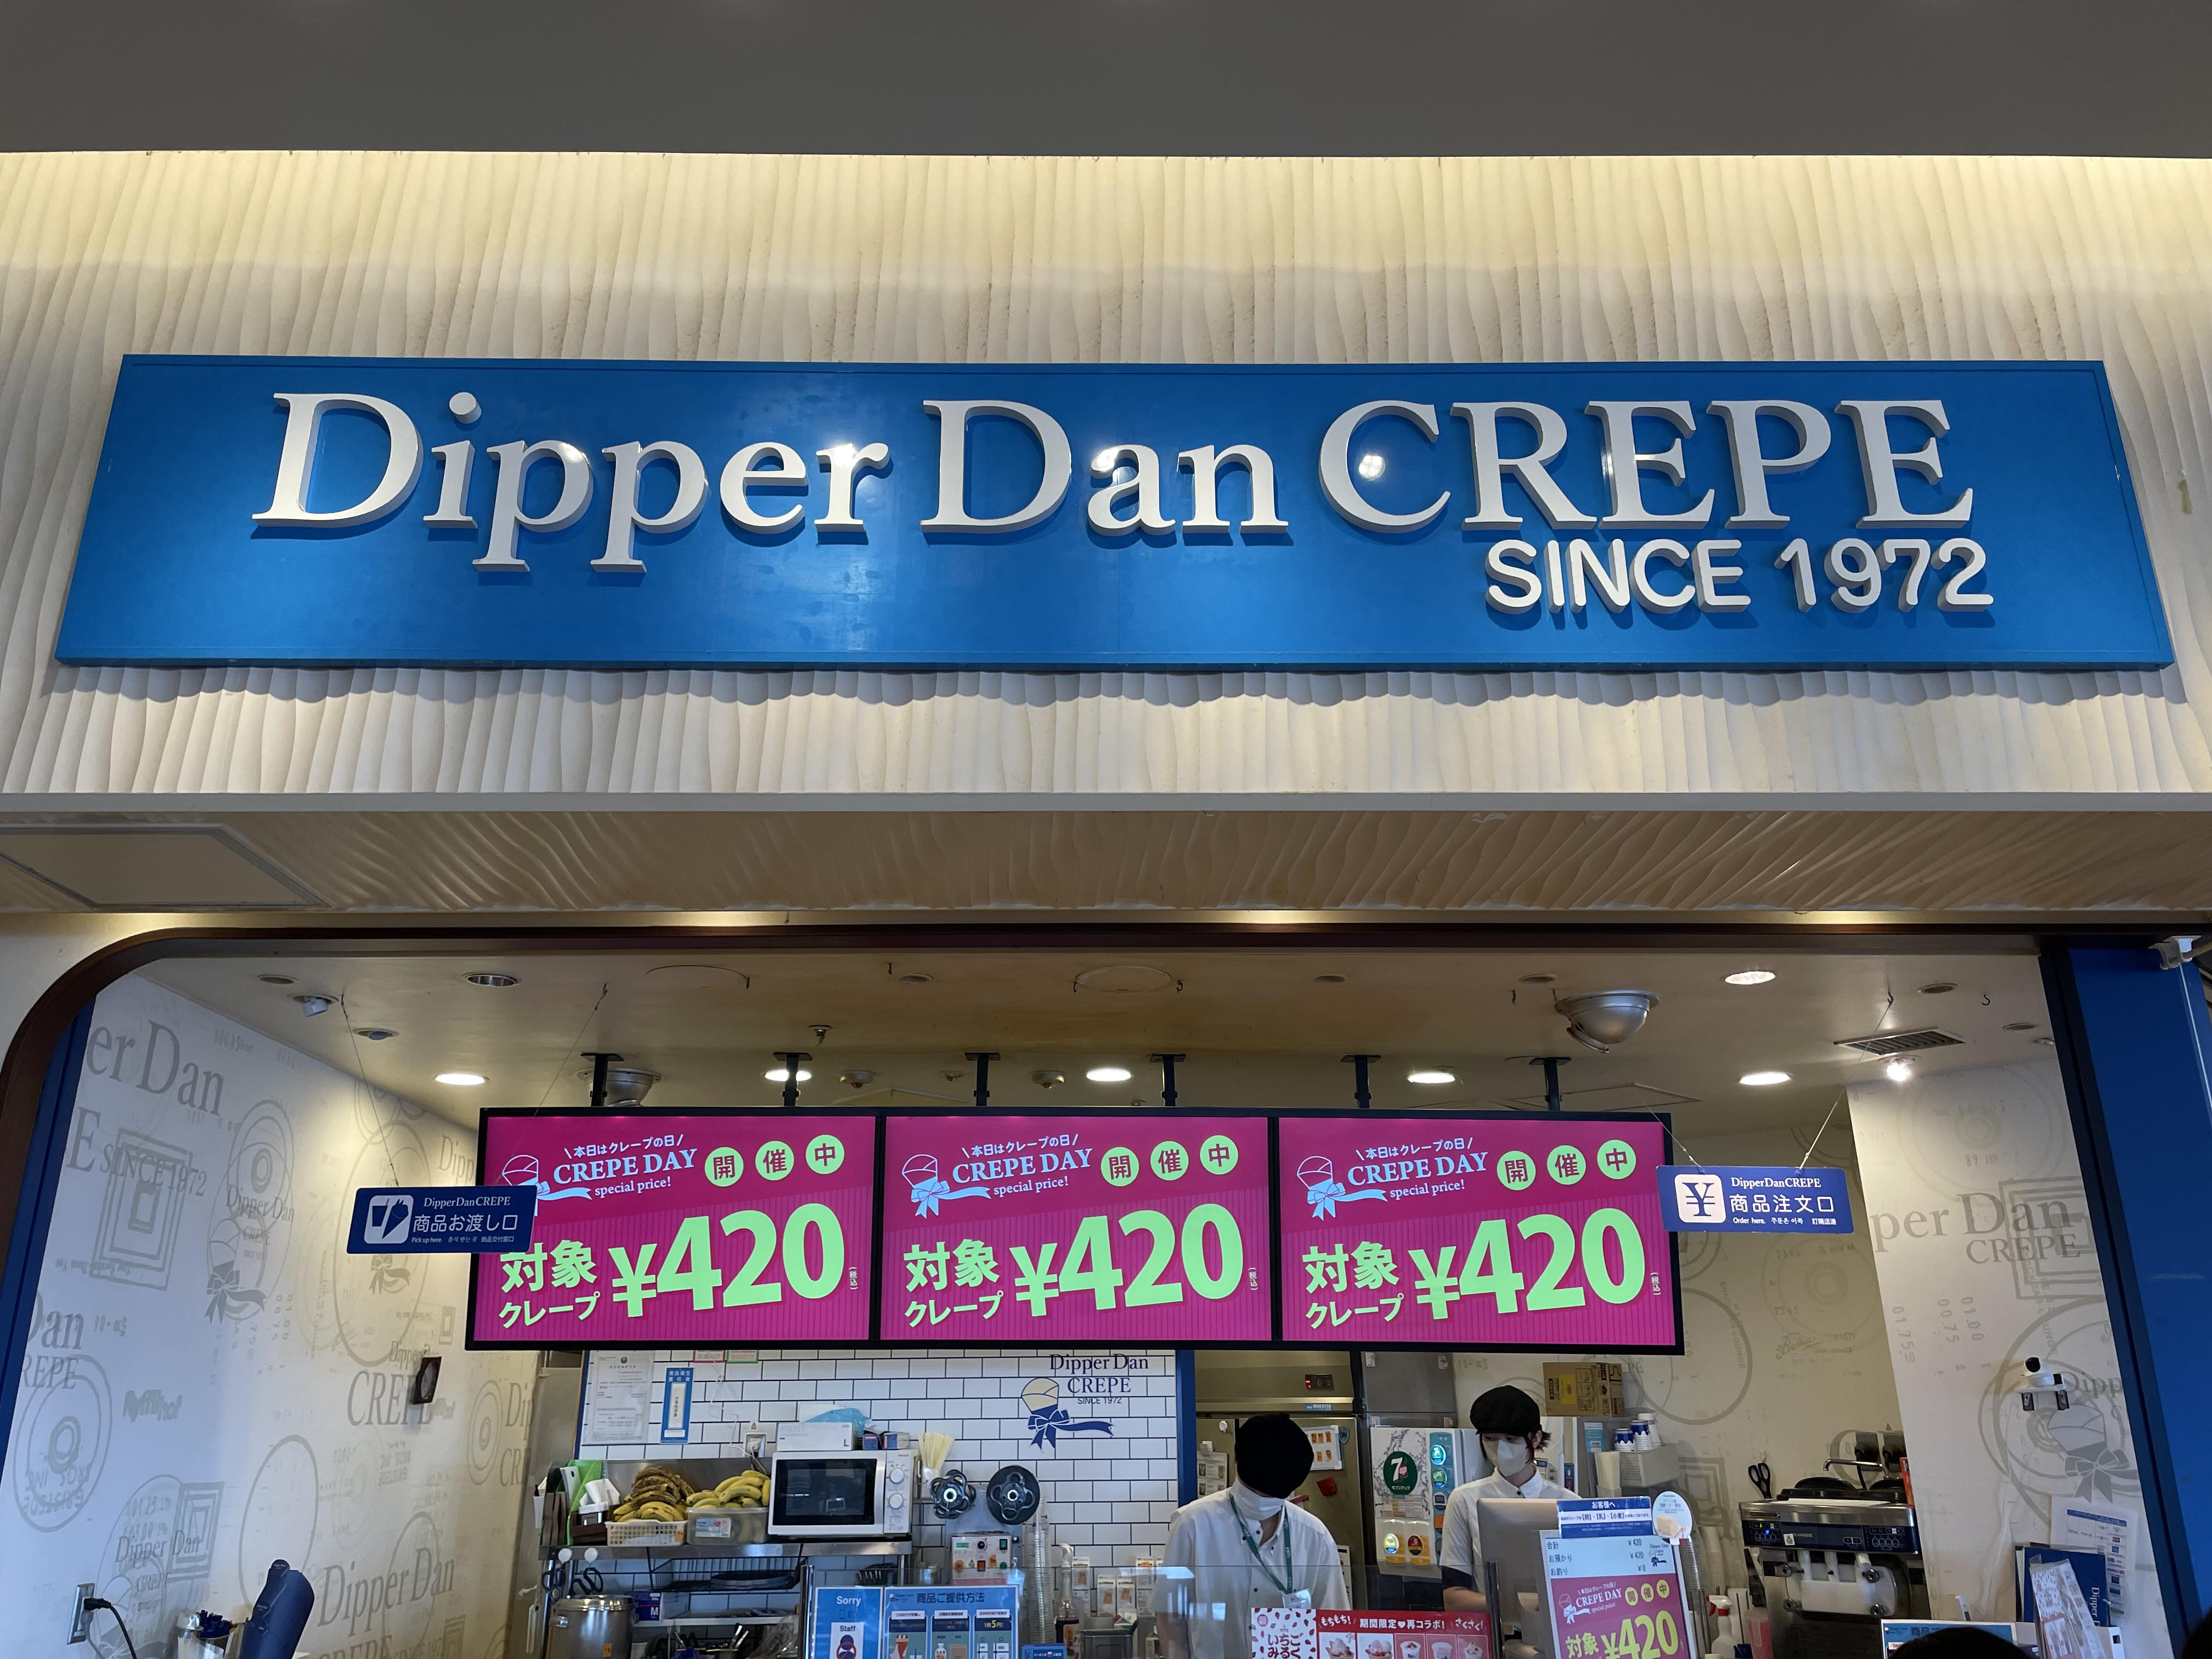 クレープ専門店「ディッパーダン クレープ」では9が付く日に「クレープの日」として、対象クレープがお買い得に食べられます